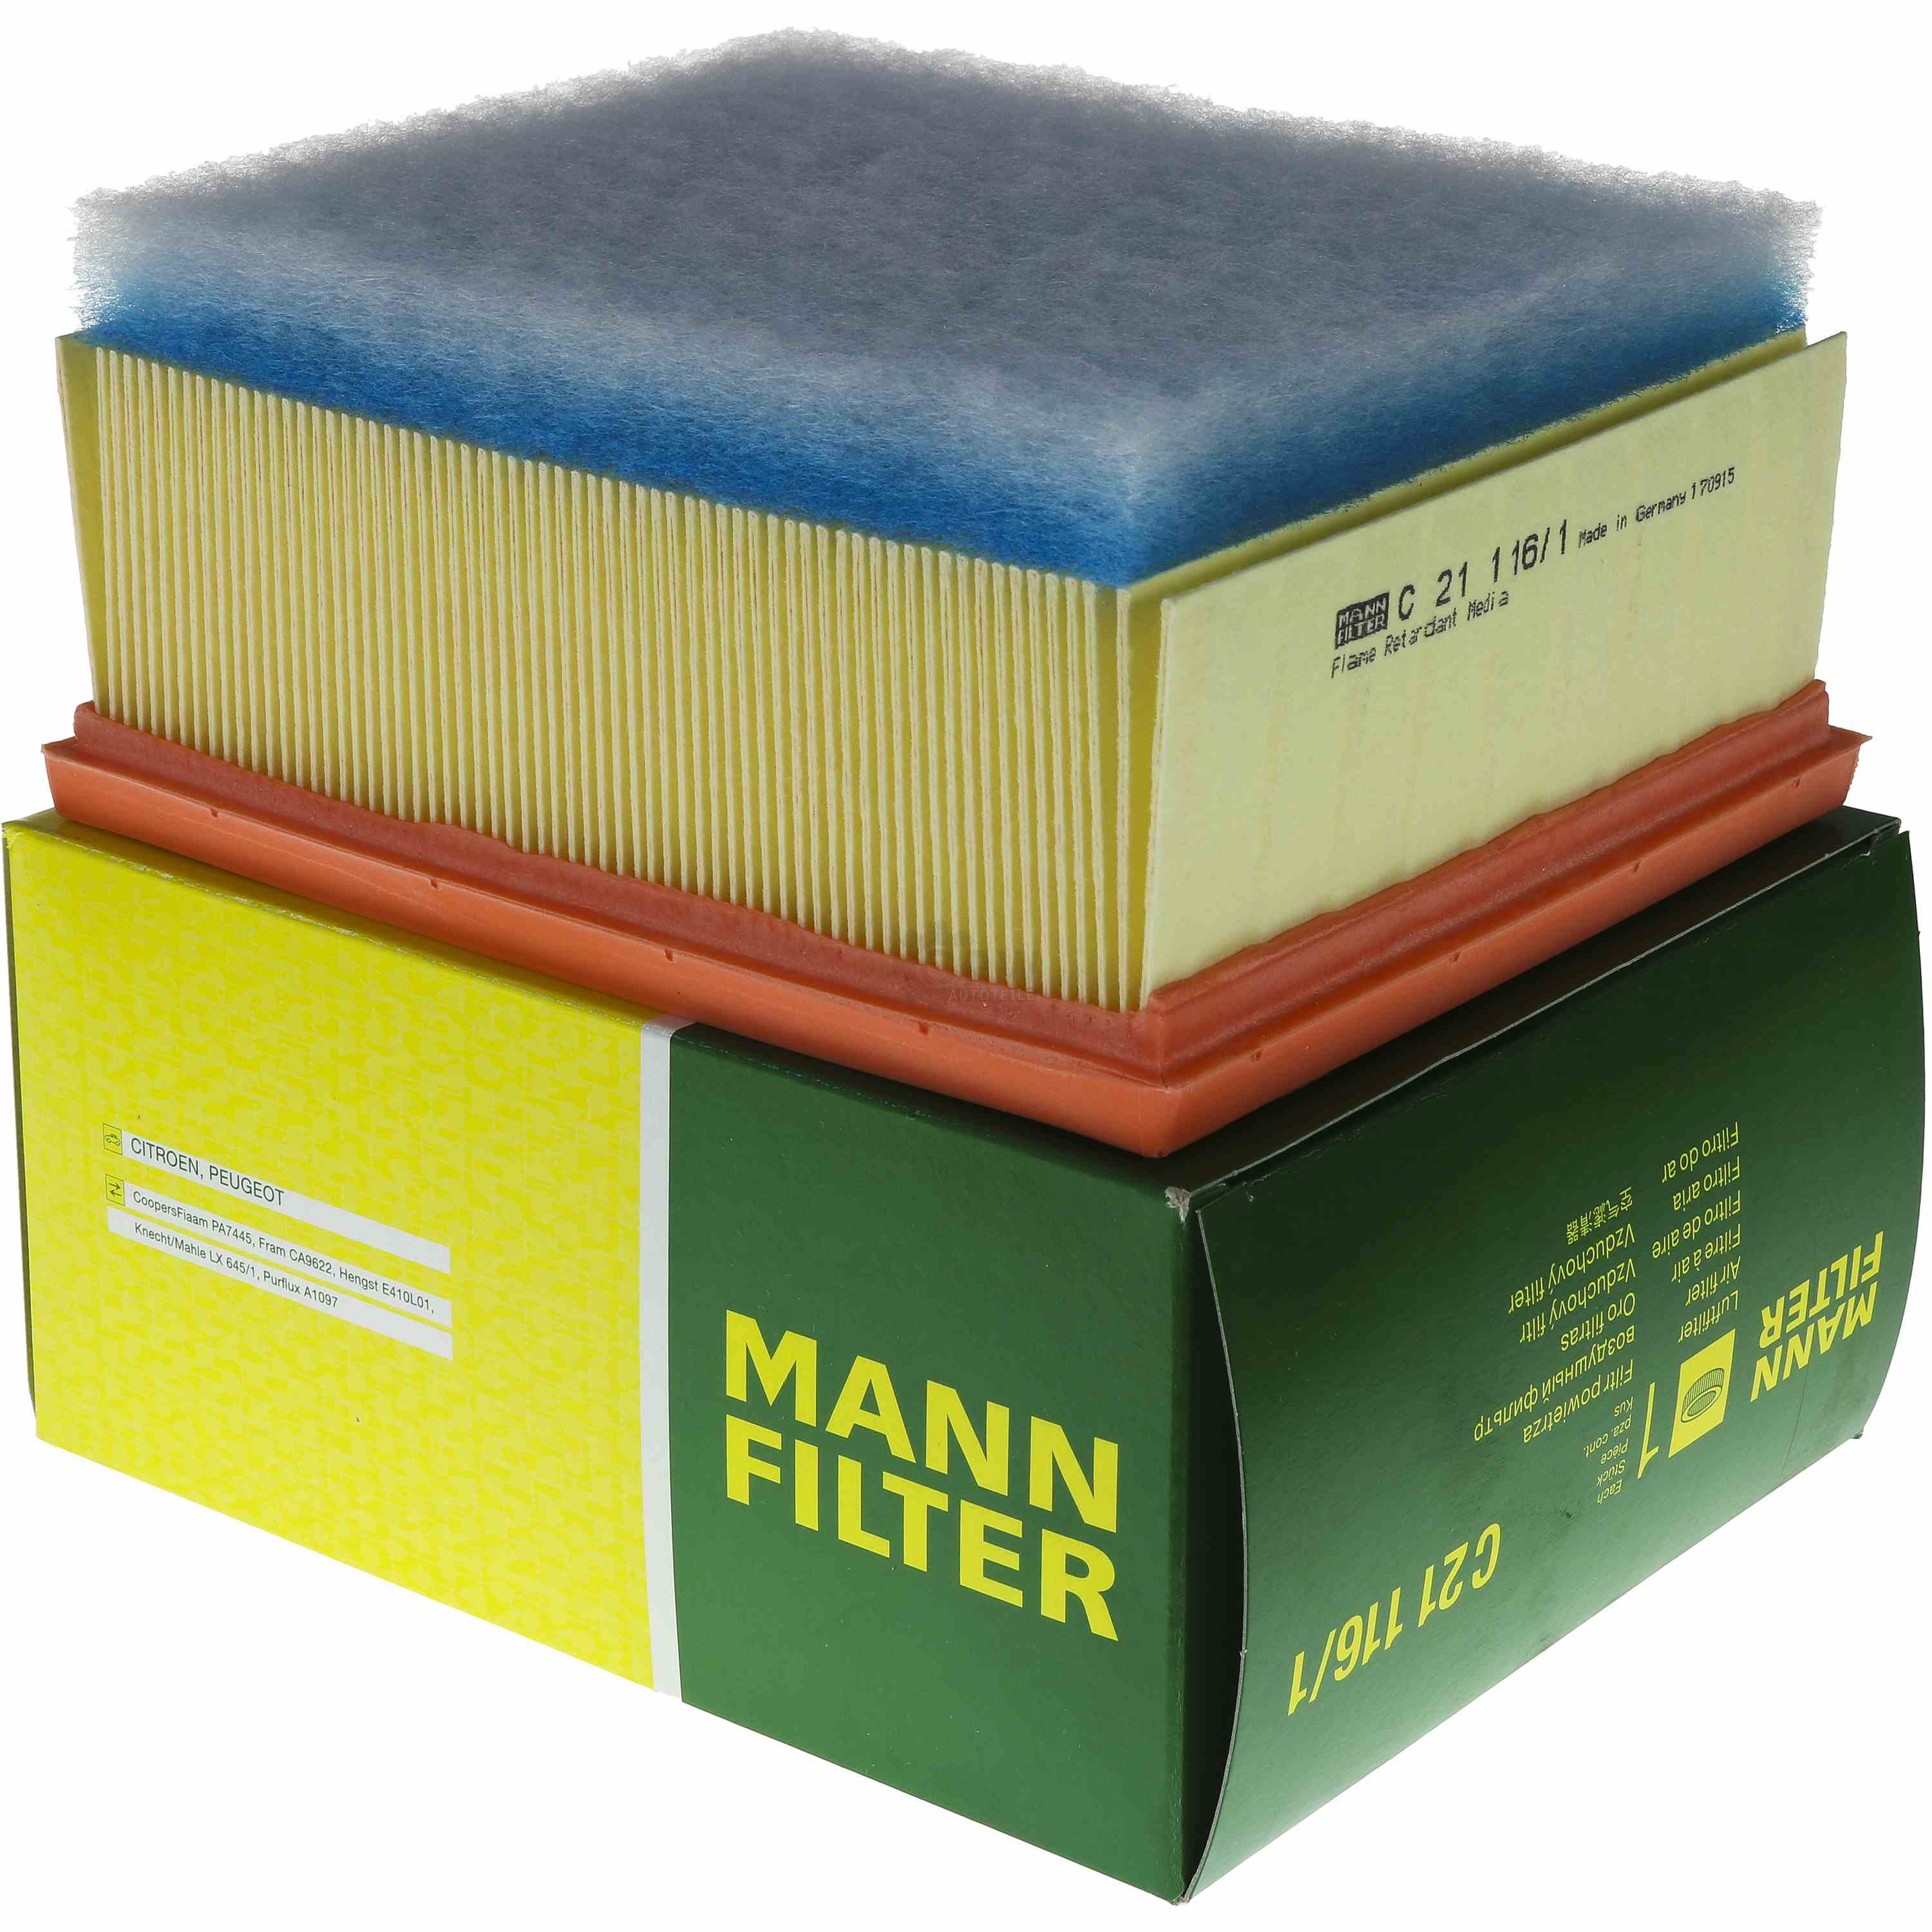 MANN-FILTER Luftfilter C 21 116